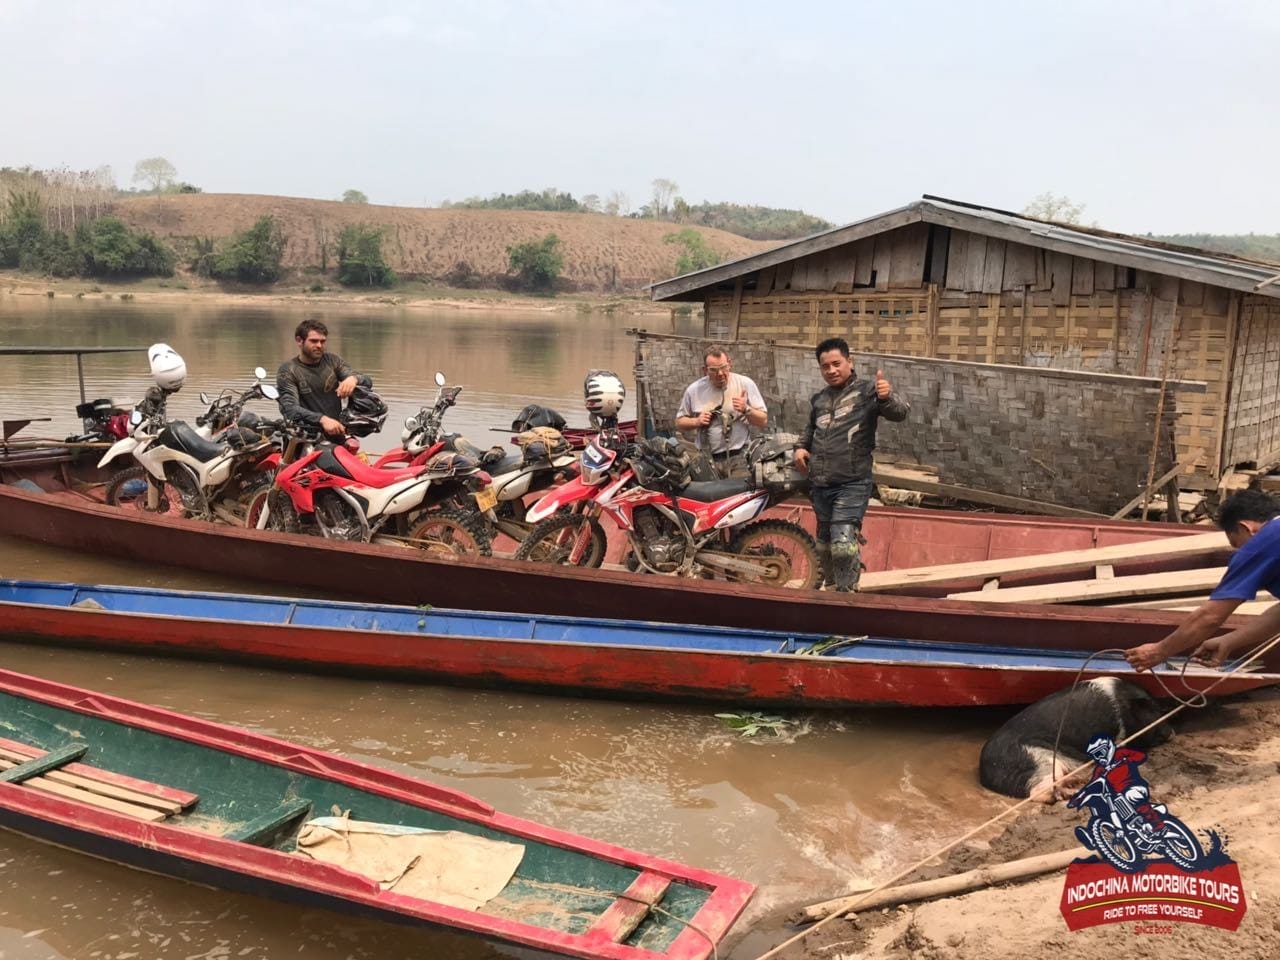 Laos Offroad Motorcycle Tour 13 - Incredible Laos Northern Motorbike Tour from Luang Prabang to Vang Vieng